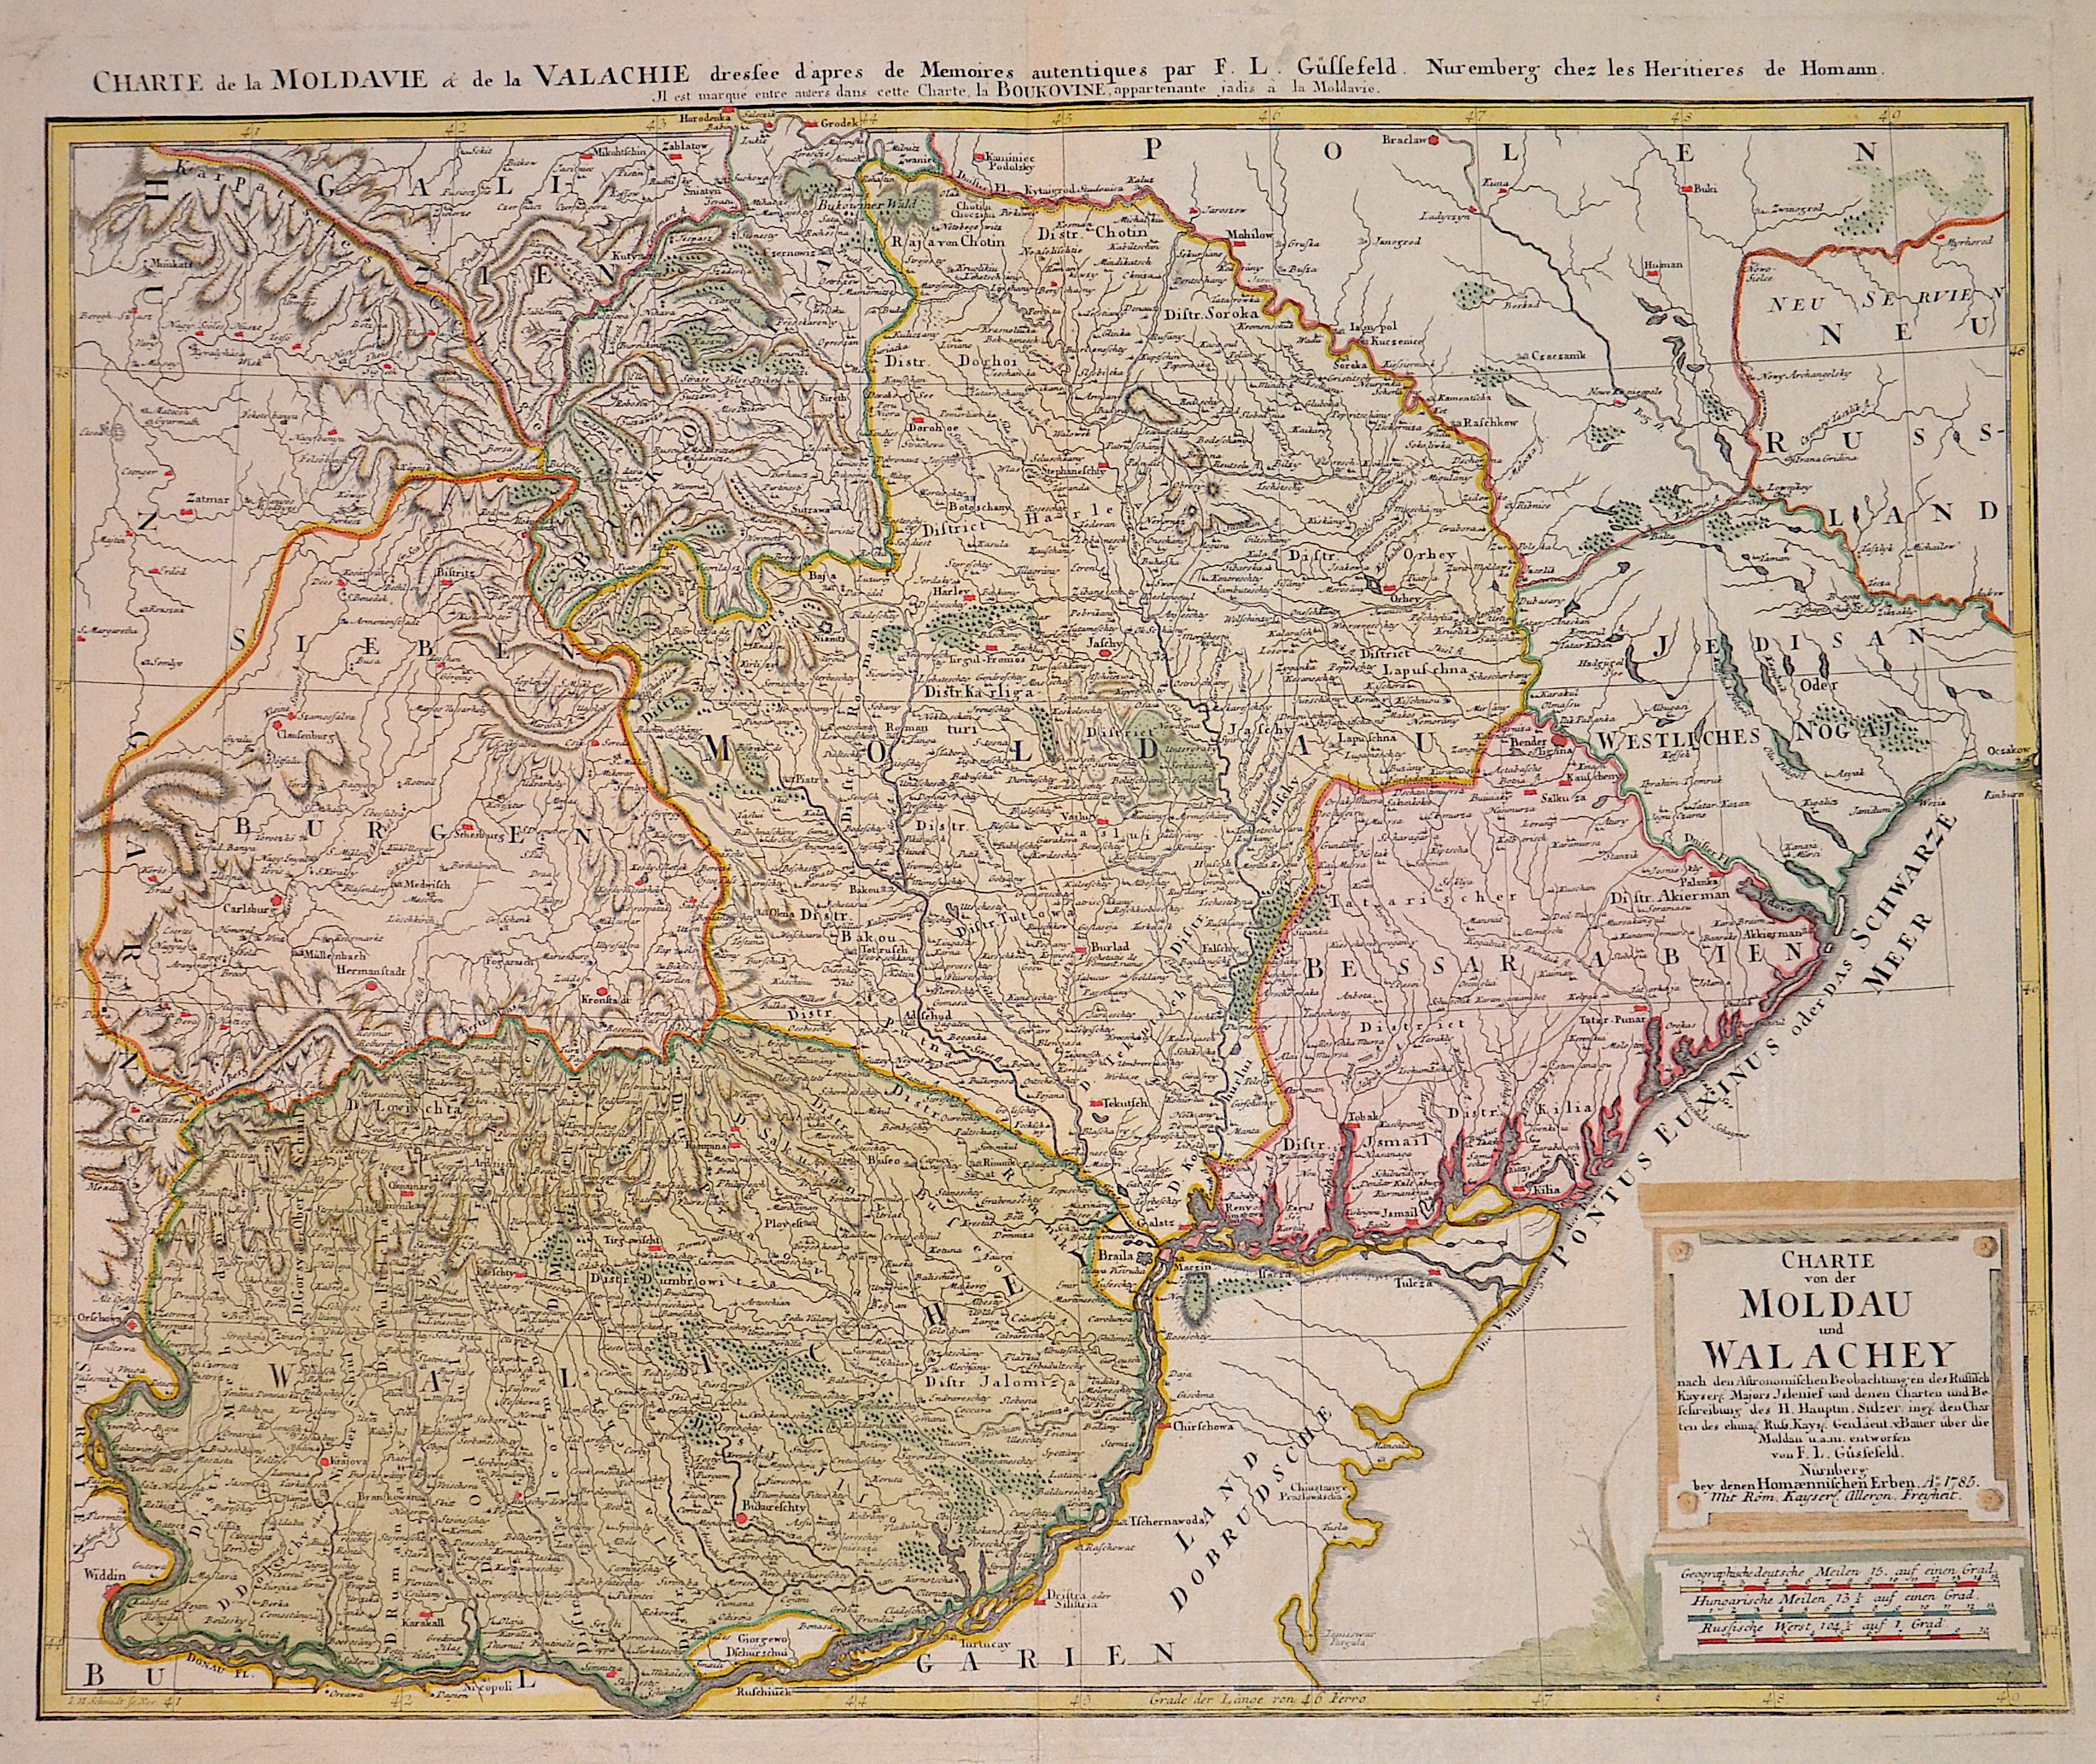 Güssefeld F.I. Charte von der Moldau und Wallachey